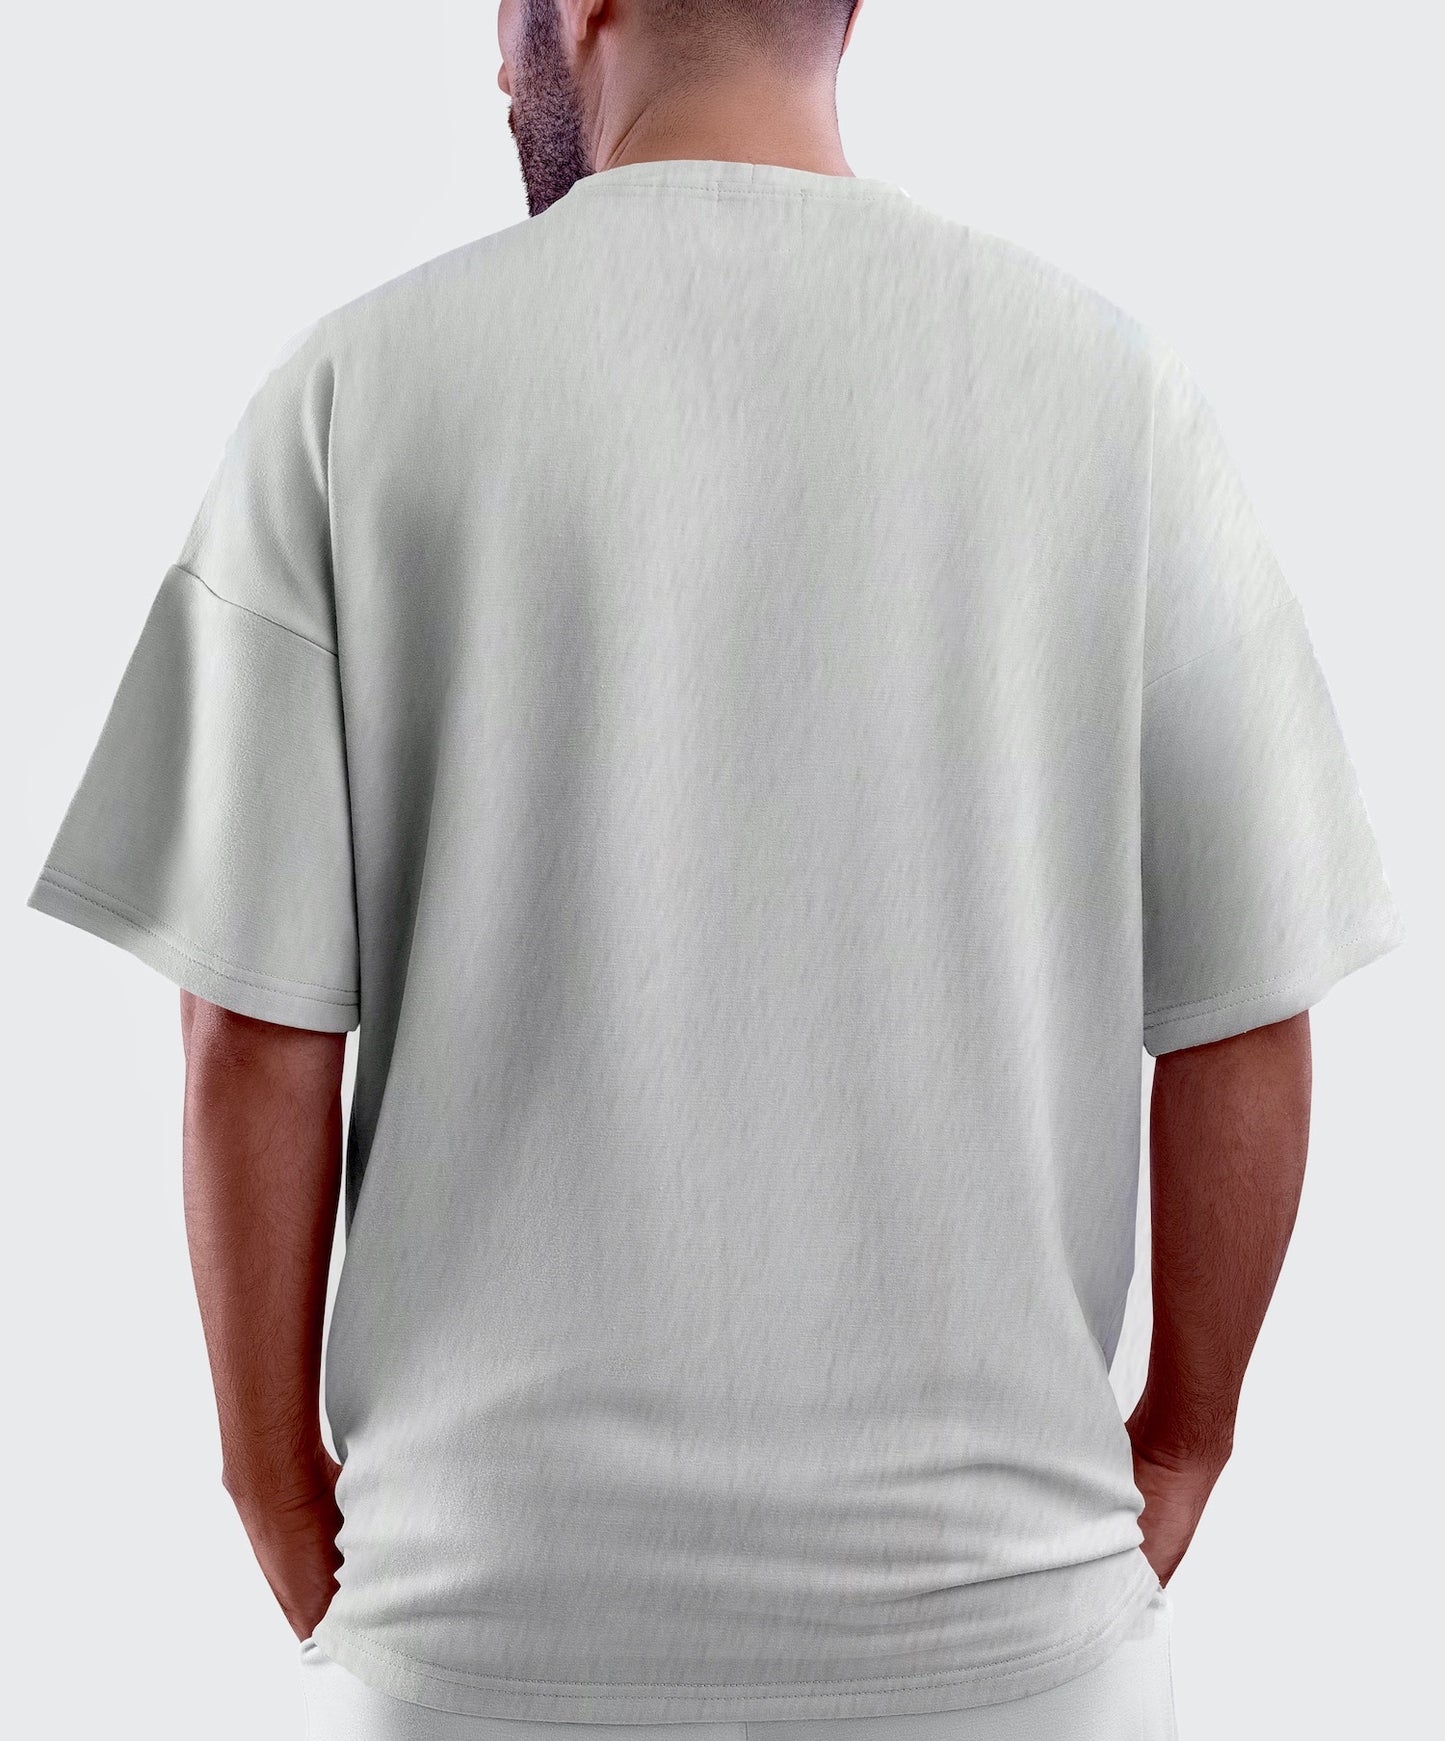 Bom Tom Off-White Urban Oversized T-Shirt for Men